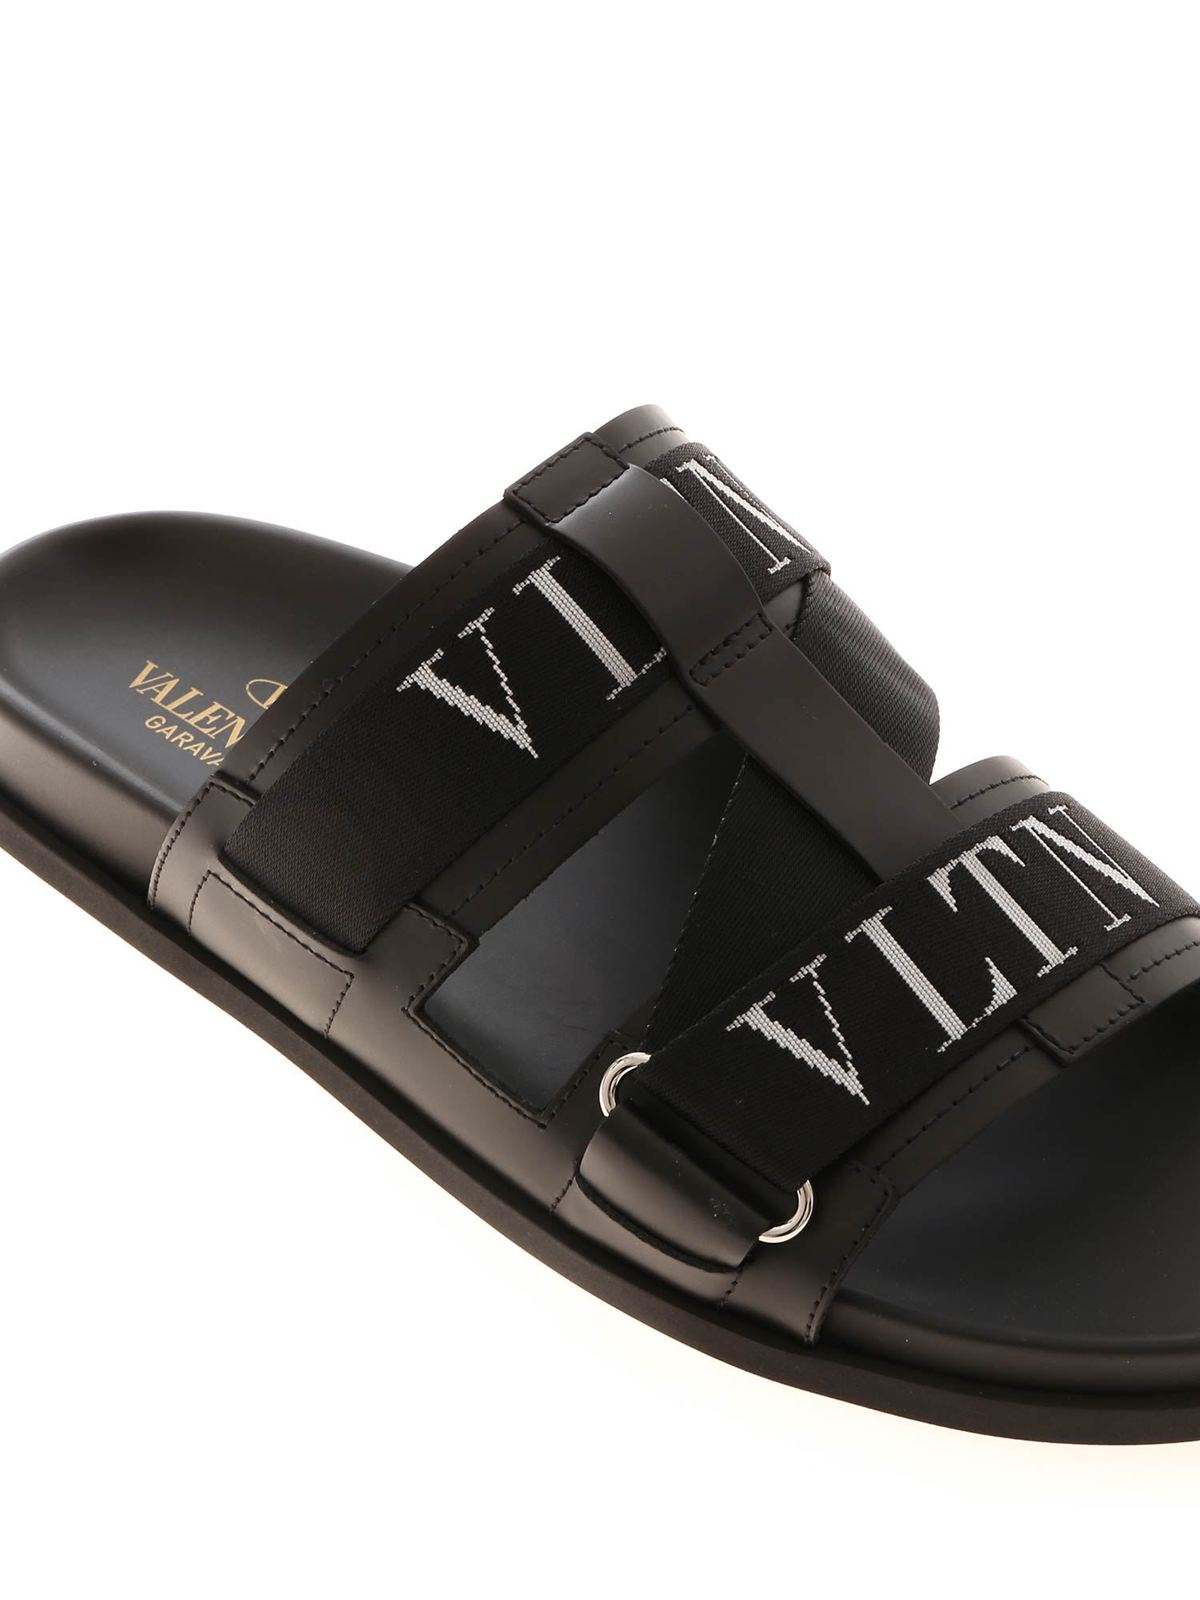 Overgivelse Suri undtagelse Sandals Valentino Garavani - VLTN sandals in black - TY0S0D41IGF0NO